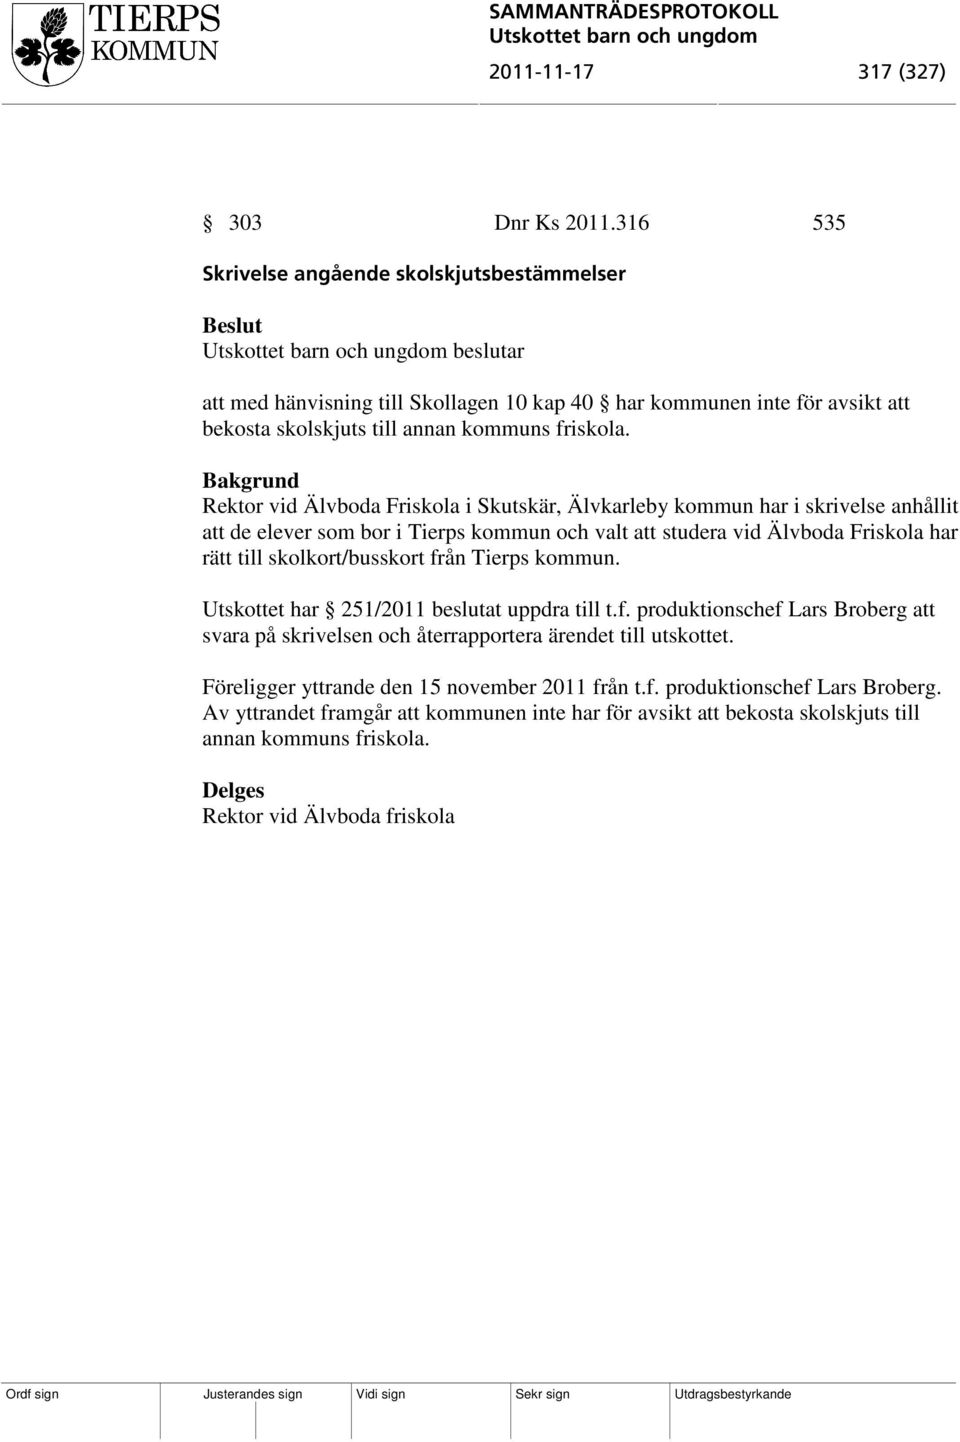 Rektor vid Älvboda Friskola i Skutskär, Älvkarleby kommun har i skrivelse anhållit att de elever som bor i Tierps kommun och valt att studera vid Älvboda Friskola har rätt till skolkort/busskort från